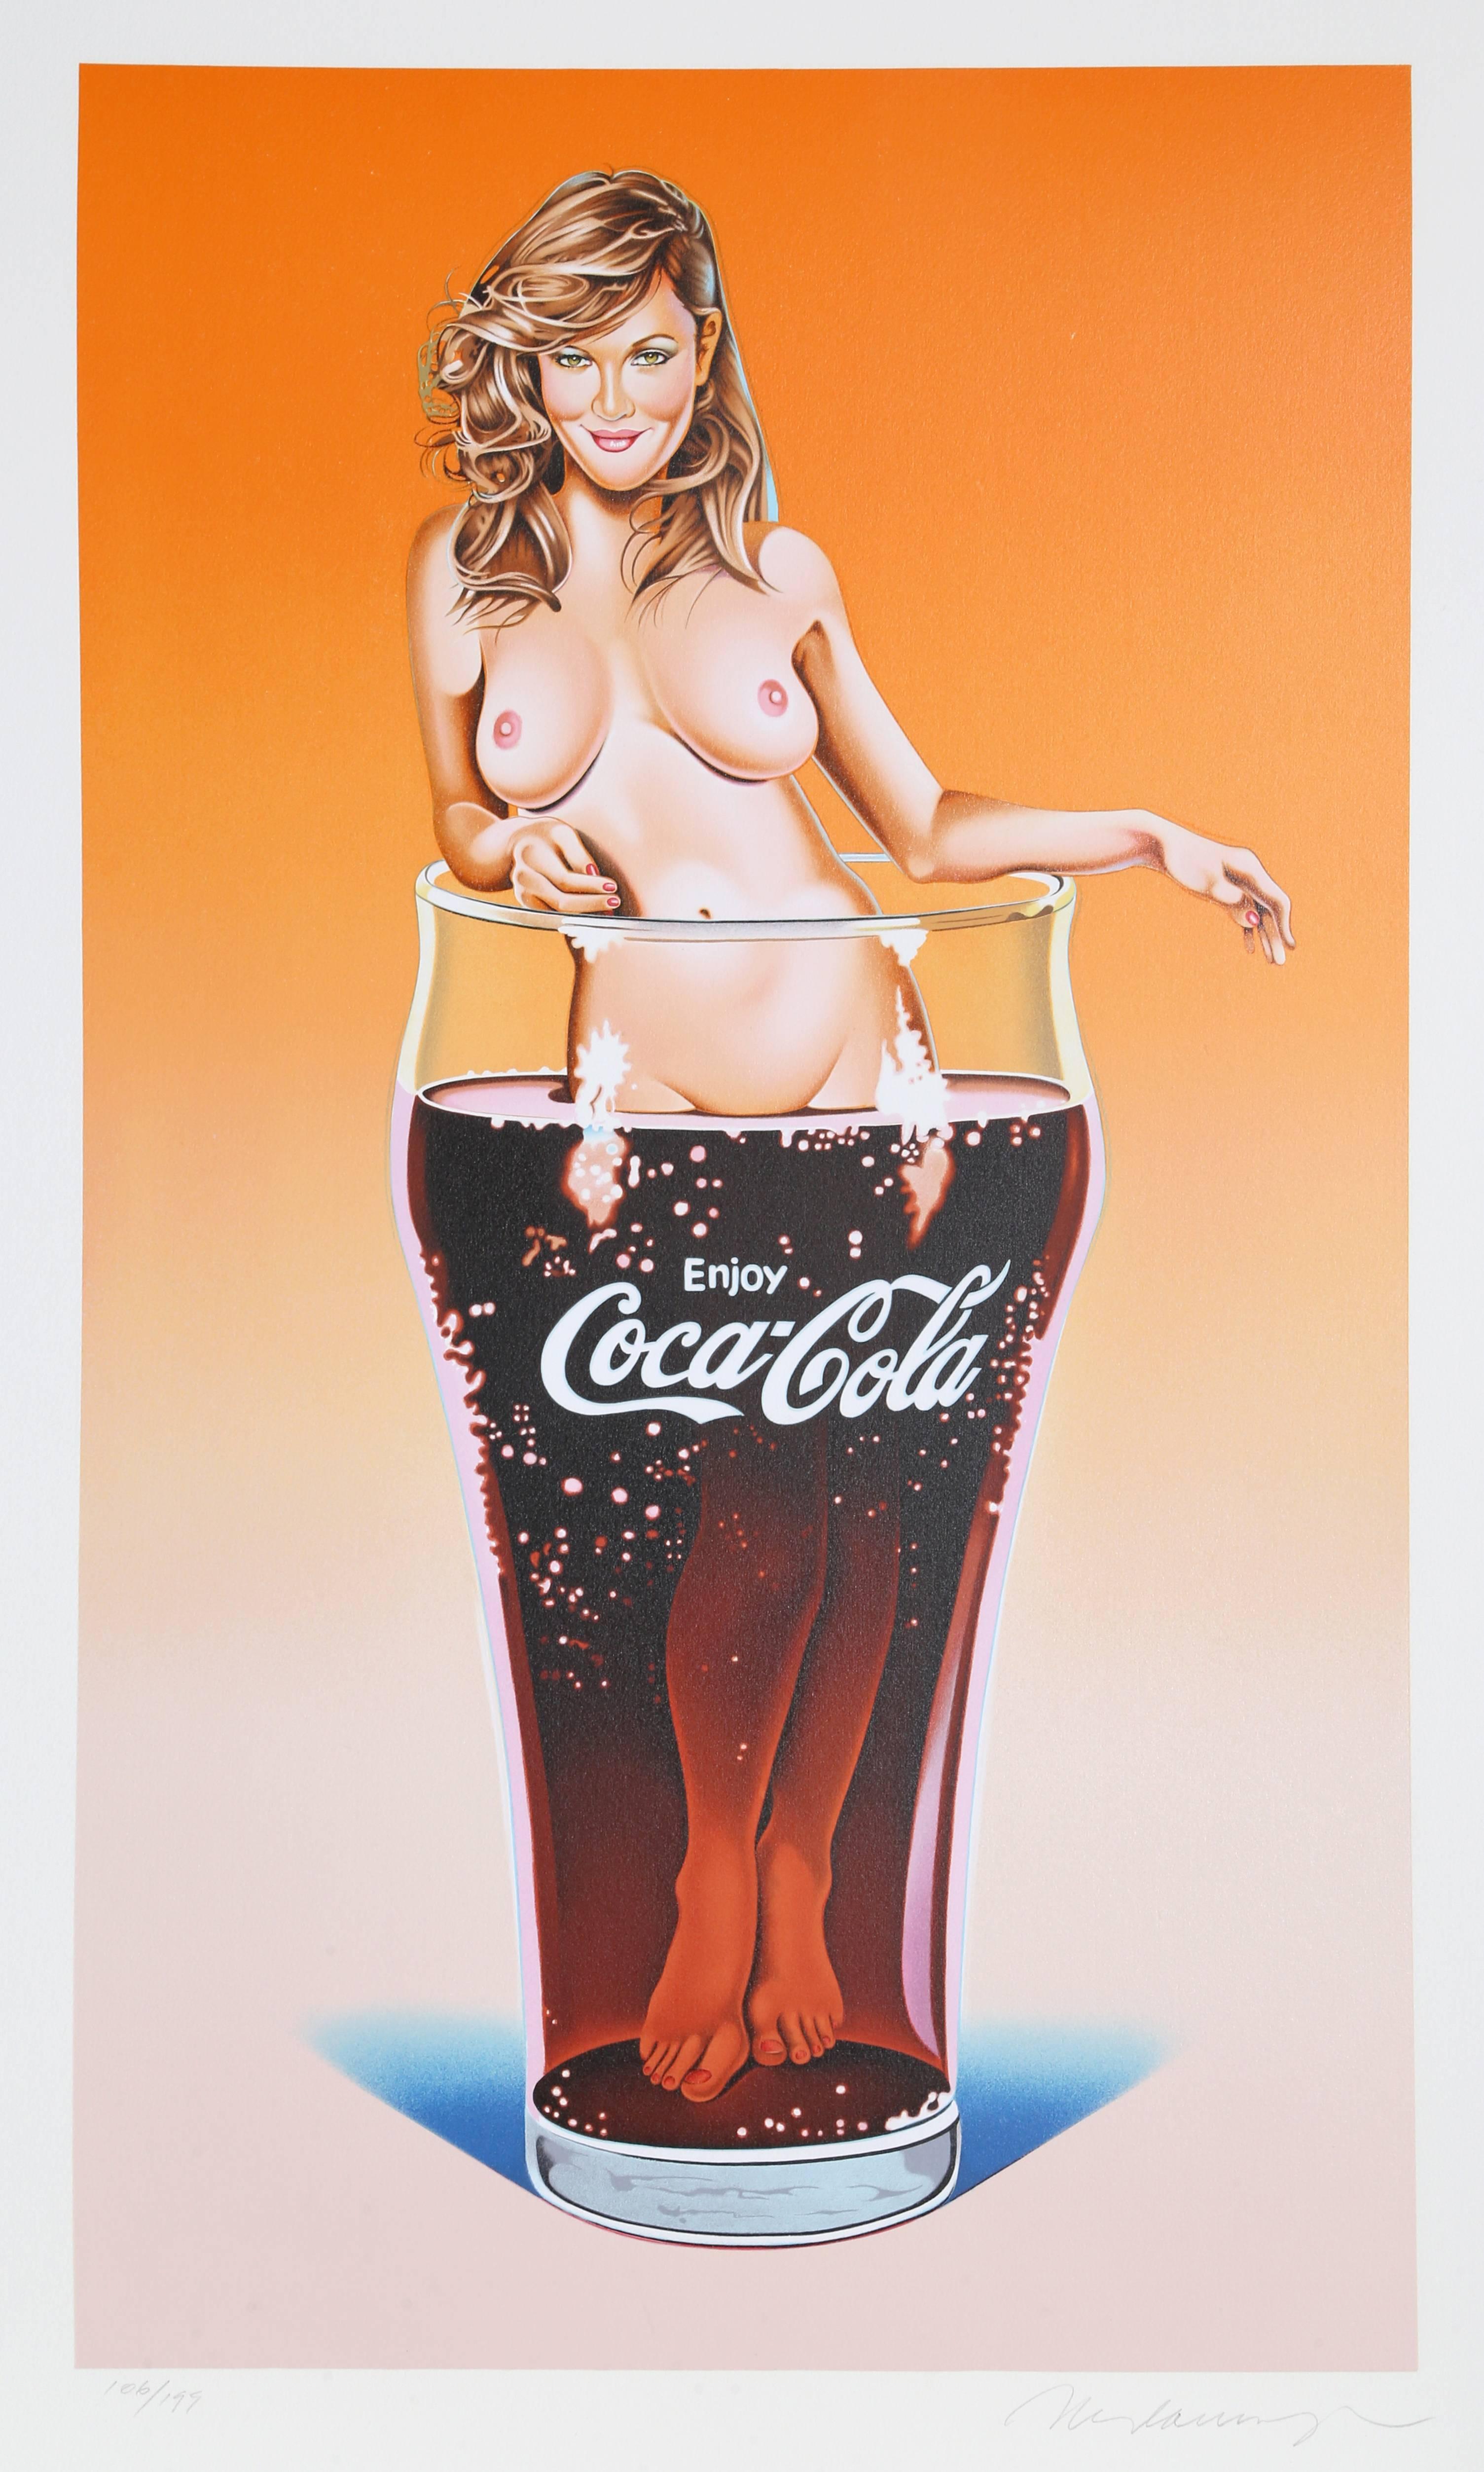 Künstler: Mel Ramos
Titel: Lola Cola #5 (Drew Barrymore)
Jahr: 2005
Medium: Lithographie, mit Bleistift signiert und nummeriert
Auflage: 199
Papierformat: 34 x 23 Zoll 